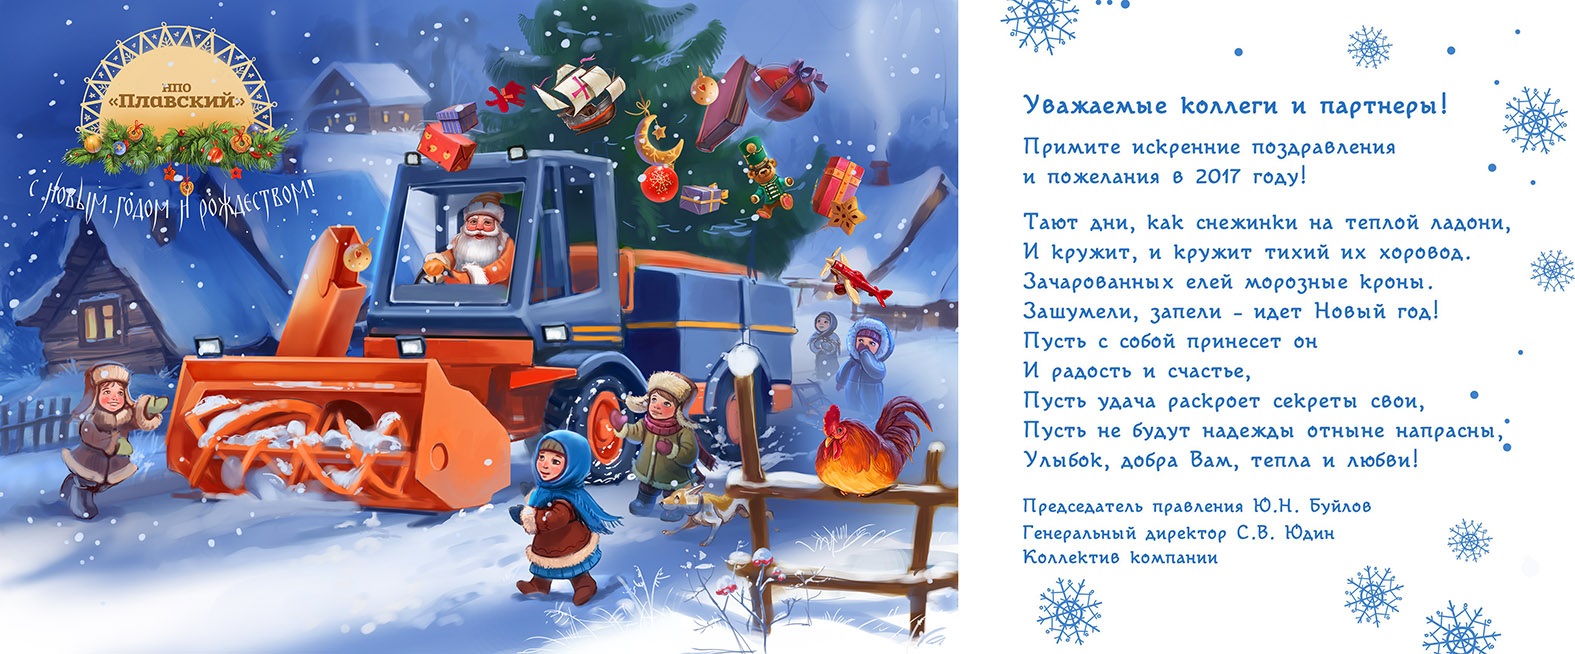 Новогоднее поздравление от НПО "Плавский"